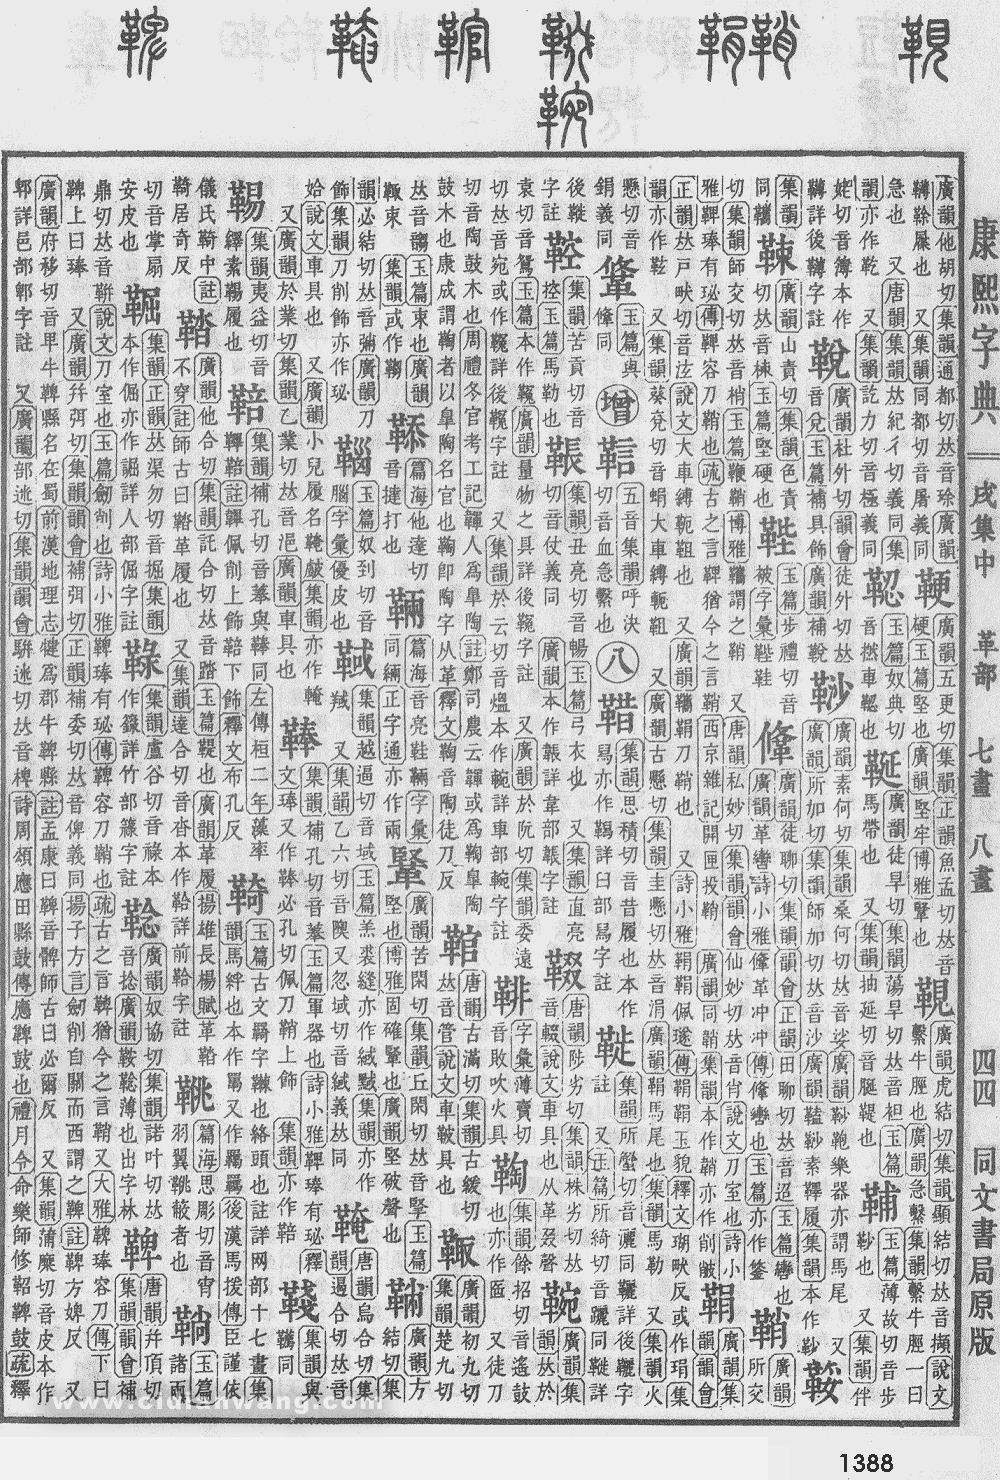 康熙字典掃描版第1388頁